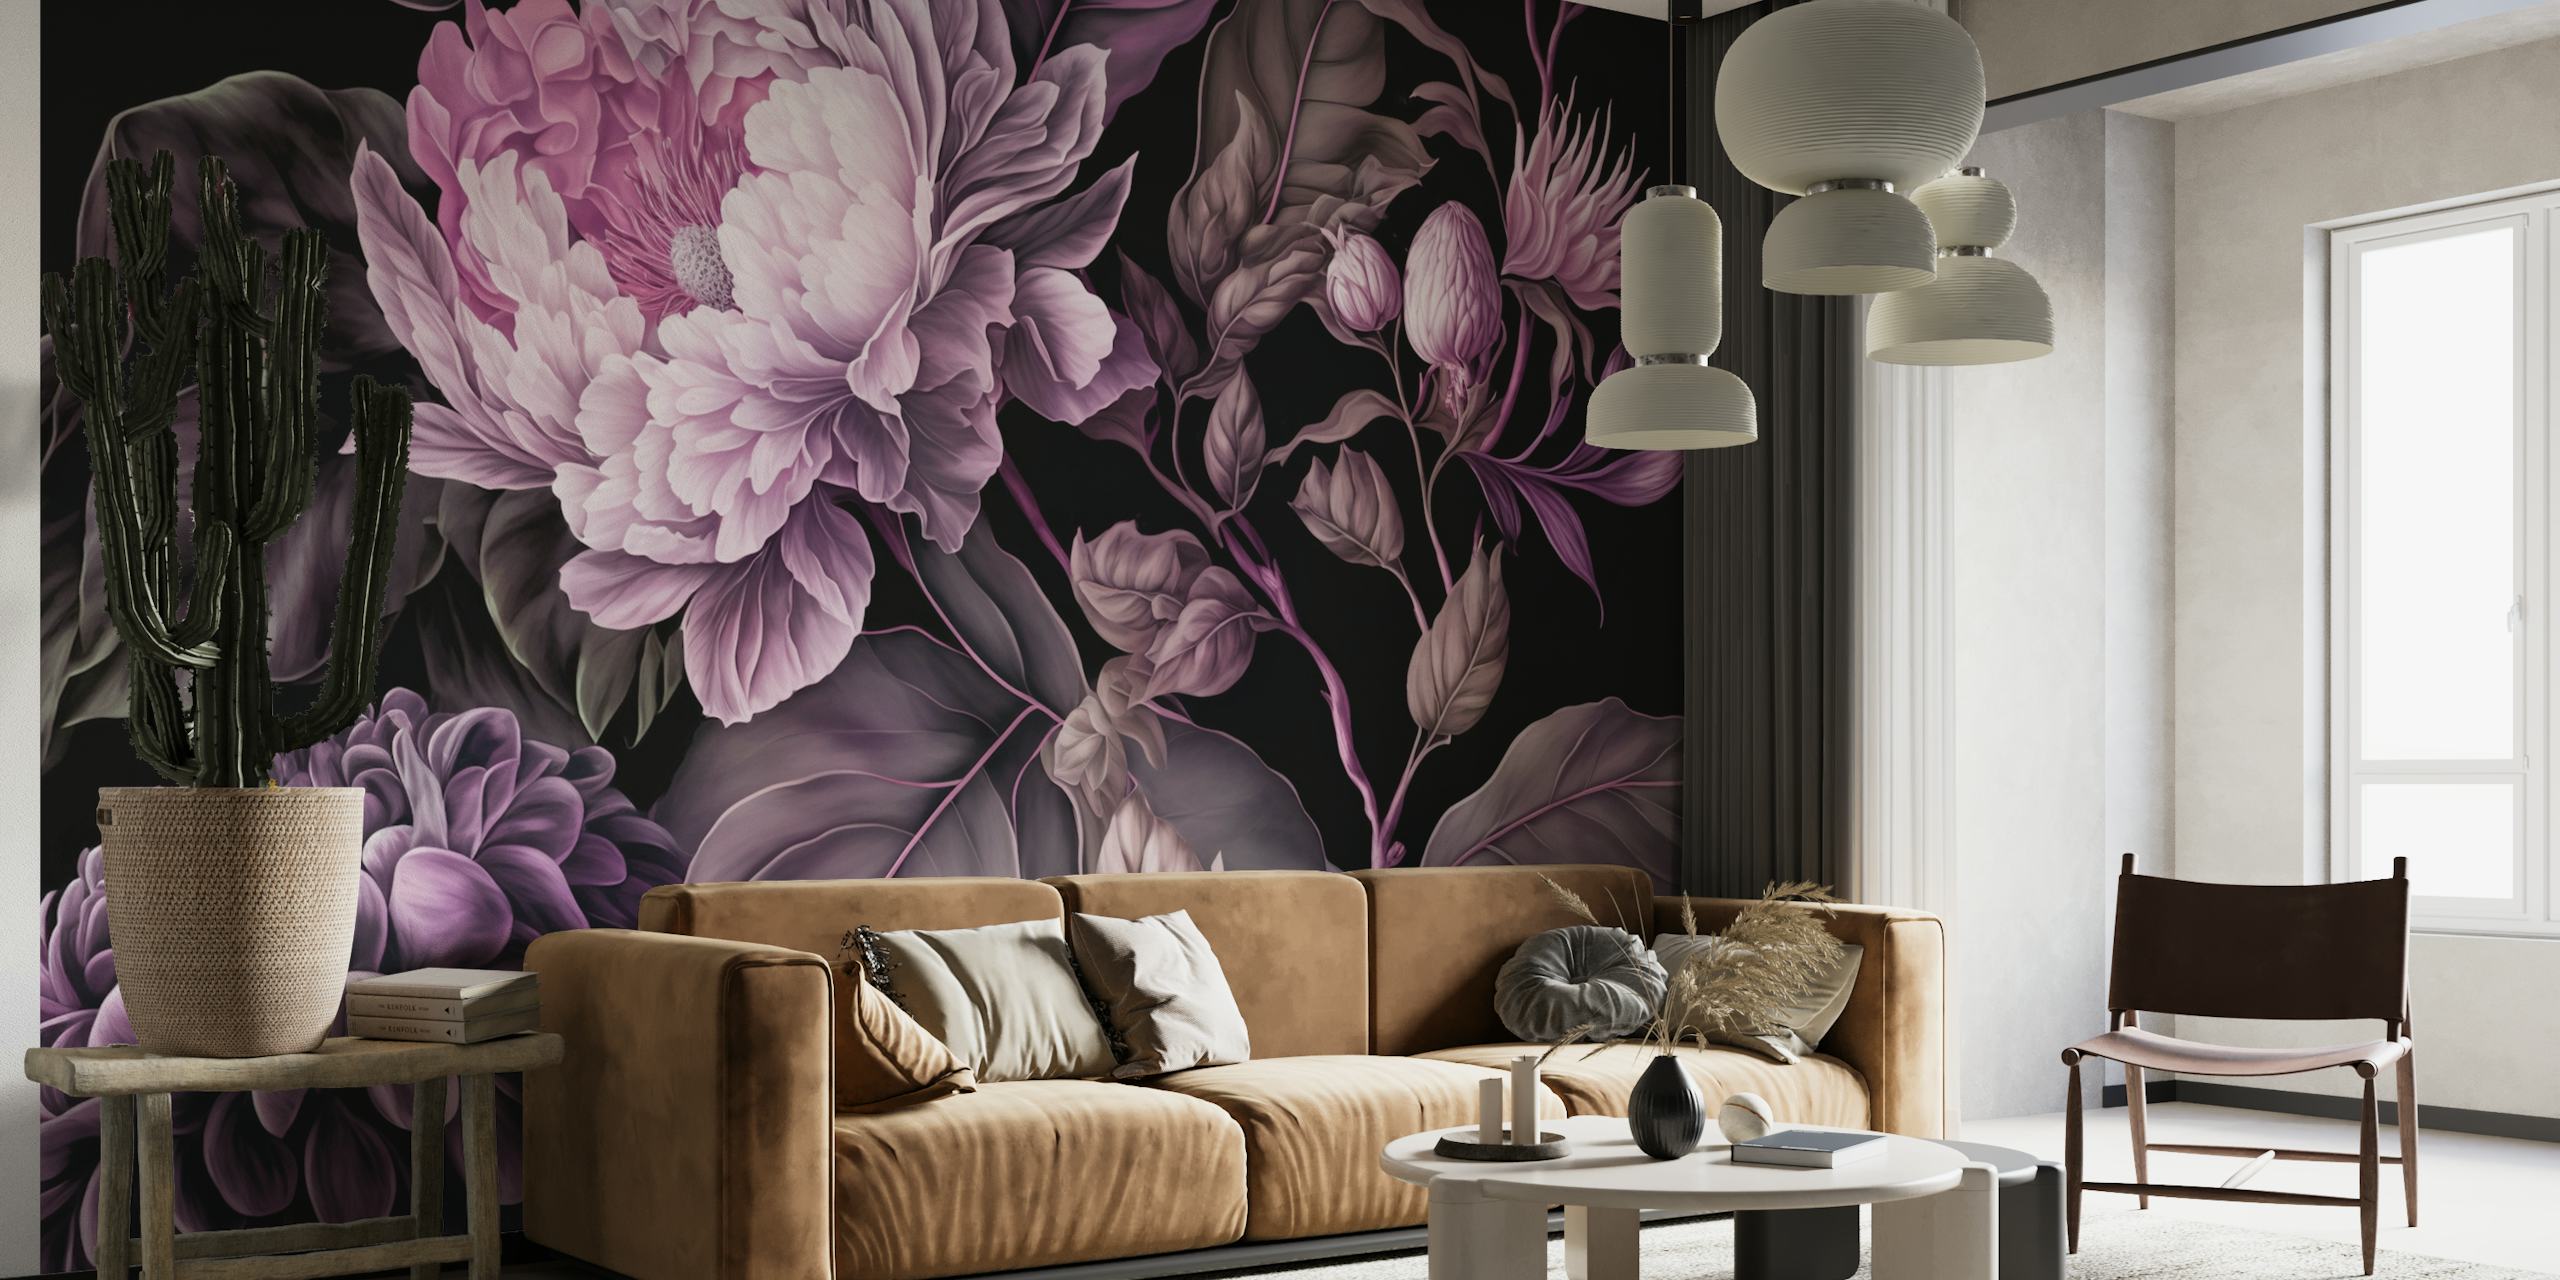 Raskošna barokna zidna slika s velikim cvjetnim uzorkom raspoloženog raspoloženja za dramatično uređenje doma.